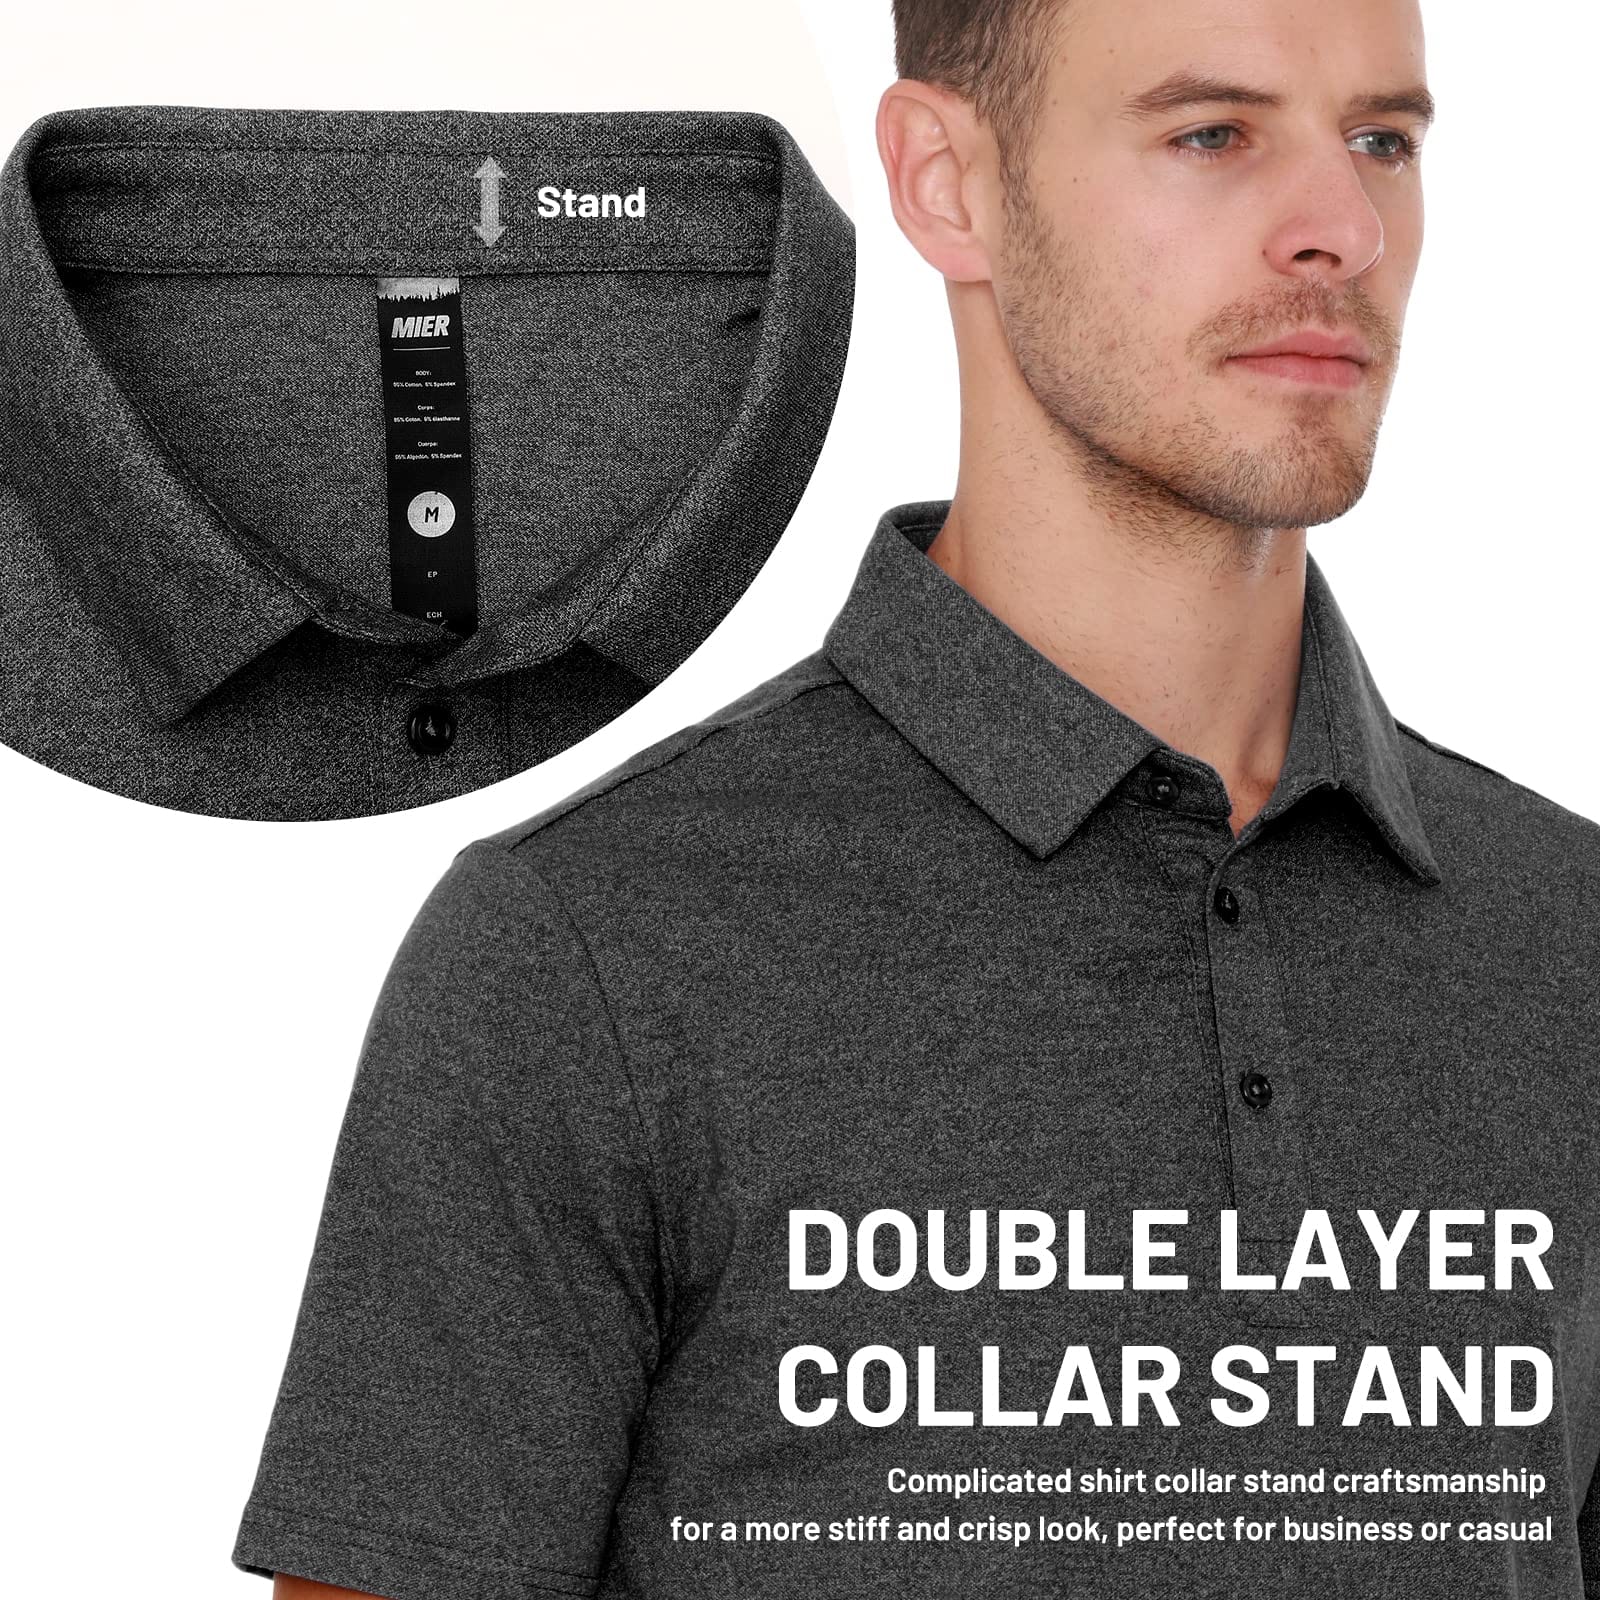 2.0 Collarless Short Sleeve, Collarless Golf Shirt For Men